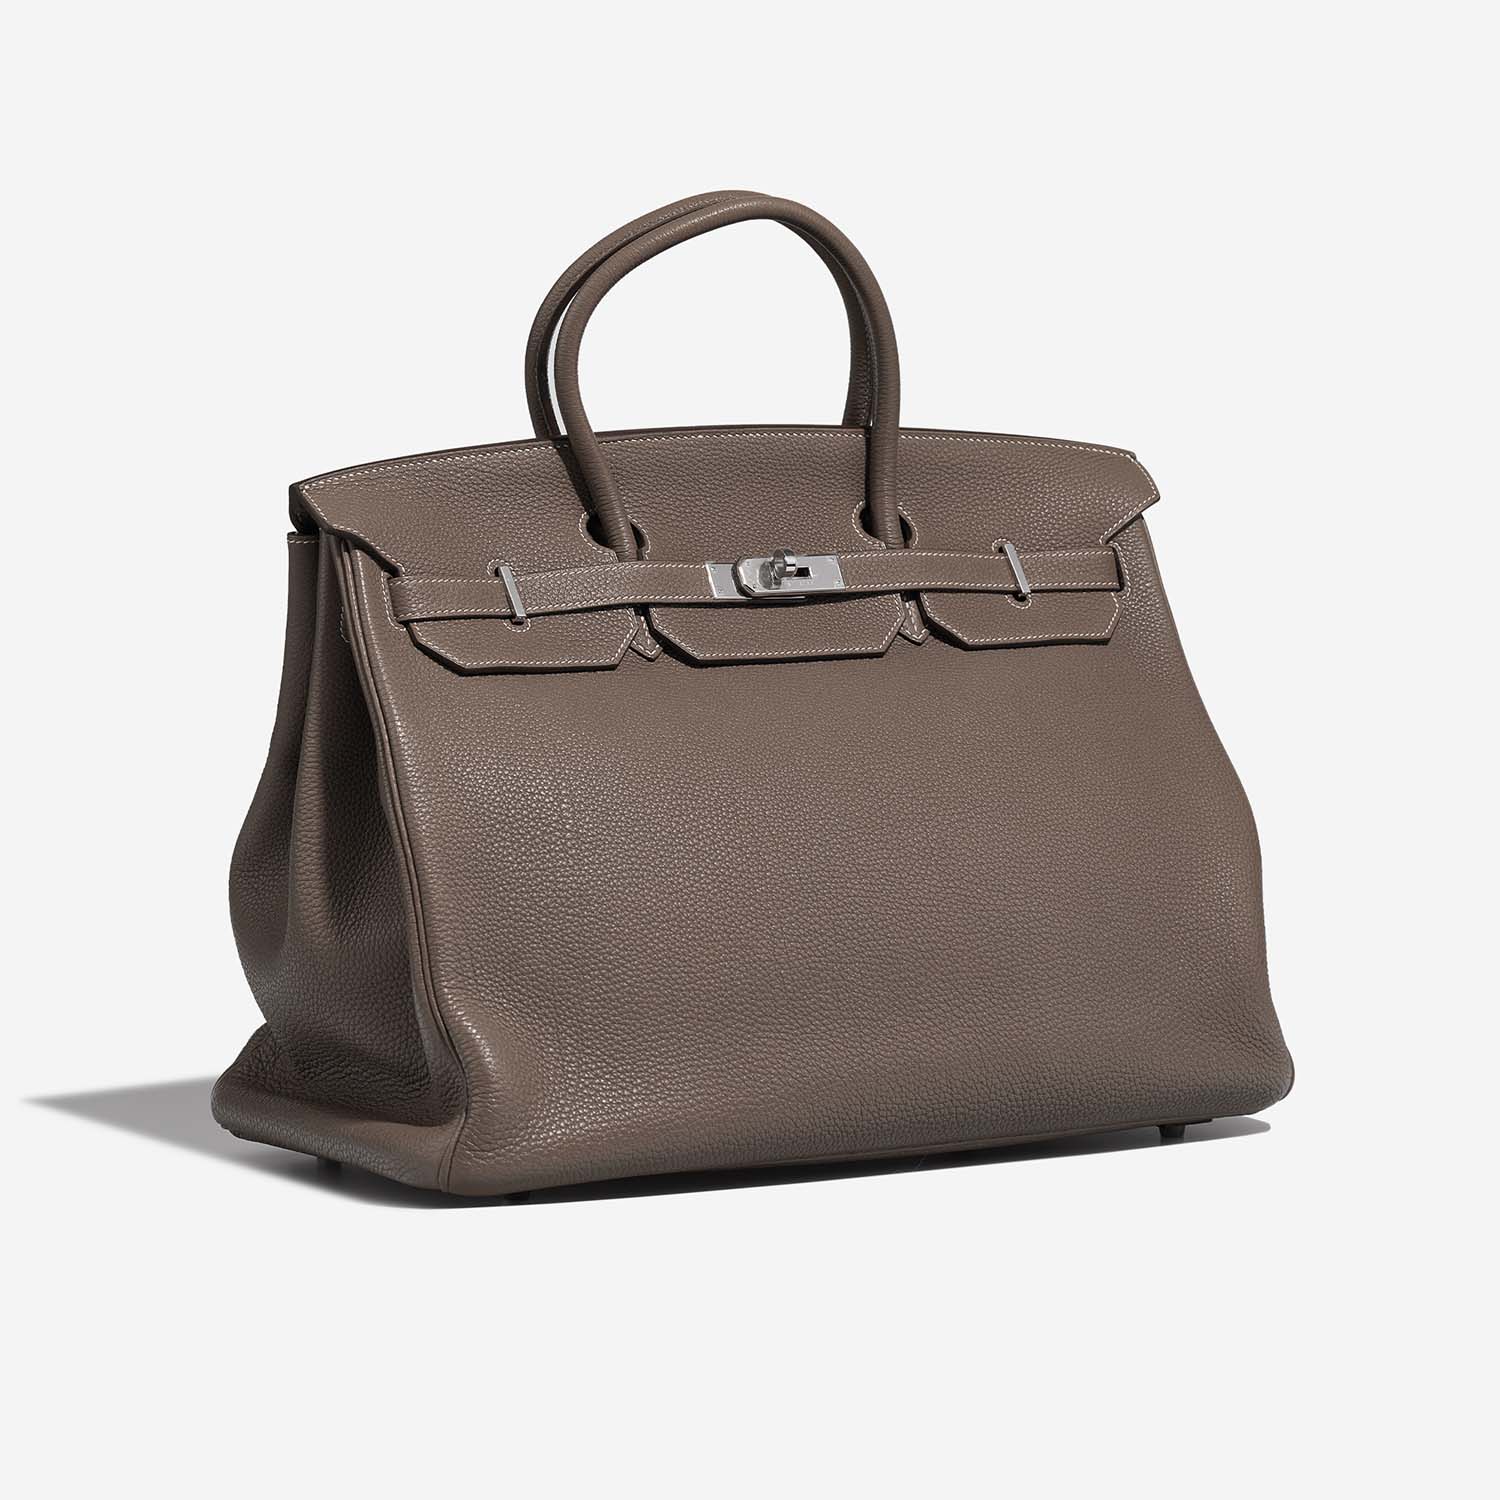 Hermès Birkin 40 Etoupe Side Front | Verkaufen Sie Ihre Designer-Tasche auf Saclab.com